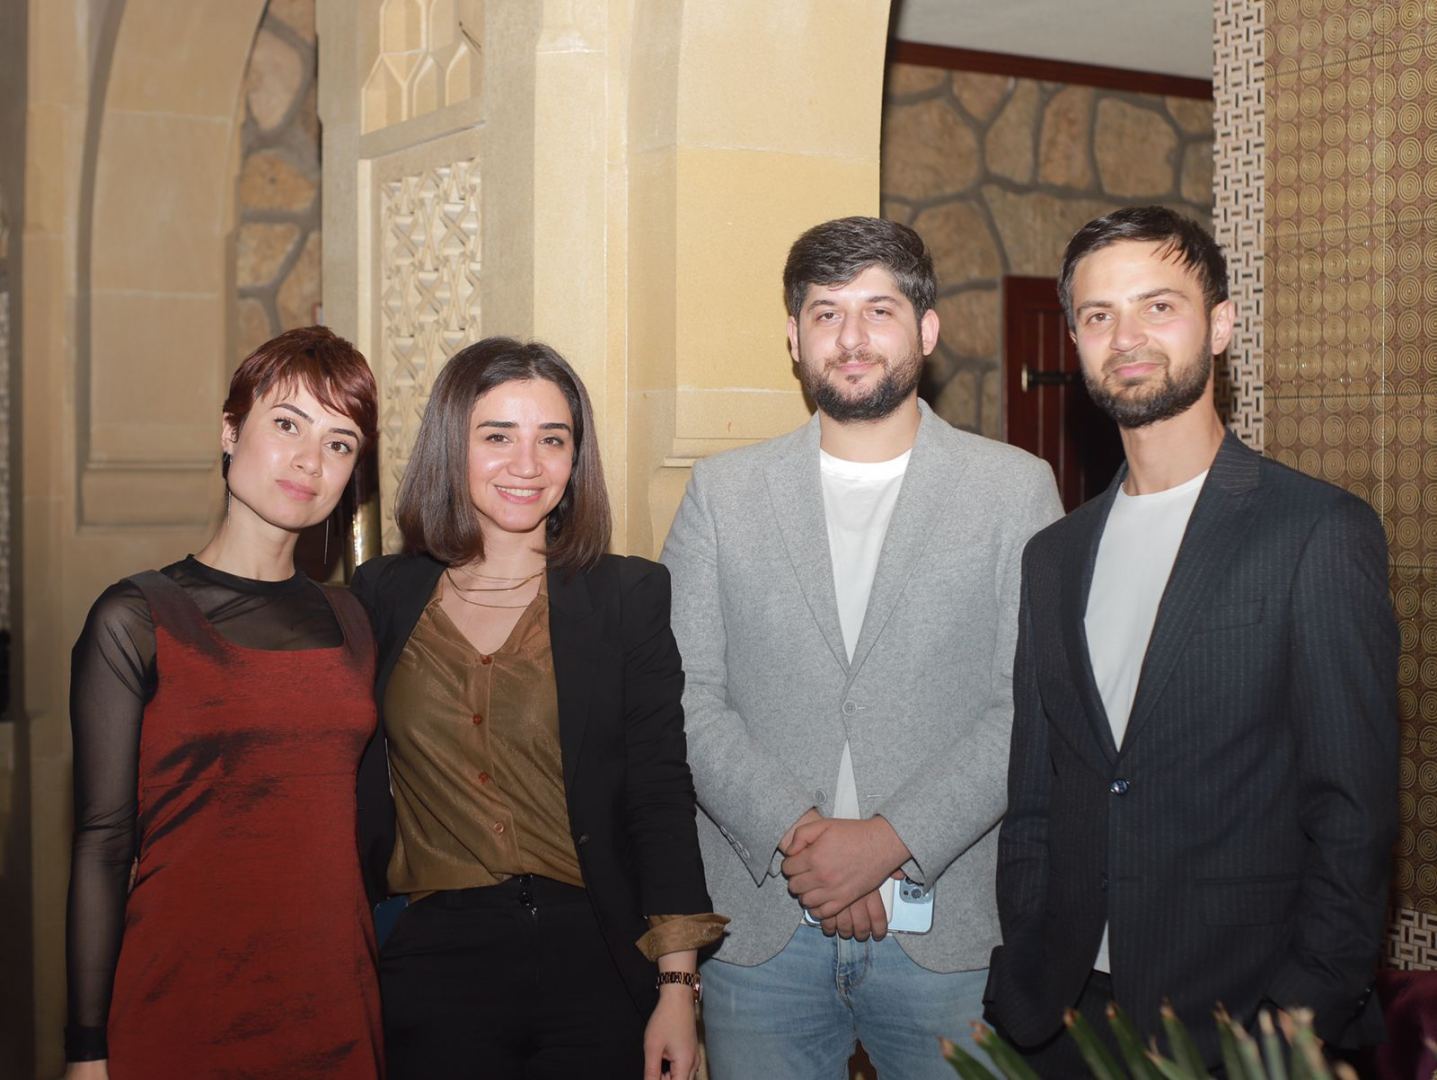 В бизнес-клубе Networking Azerbaijan прошла интеллектуальная игра "Гамбит" (ФОТО)